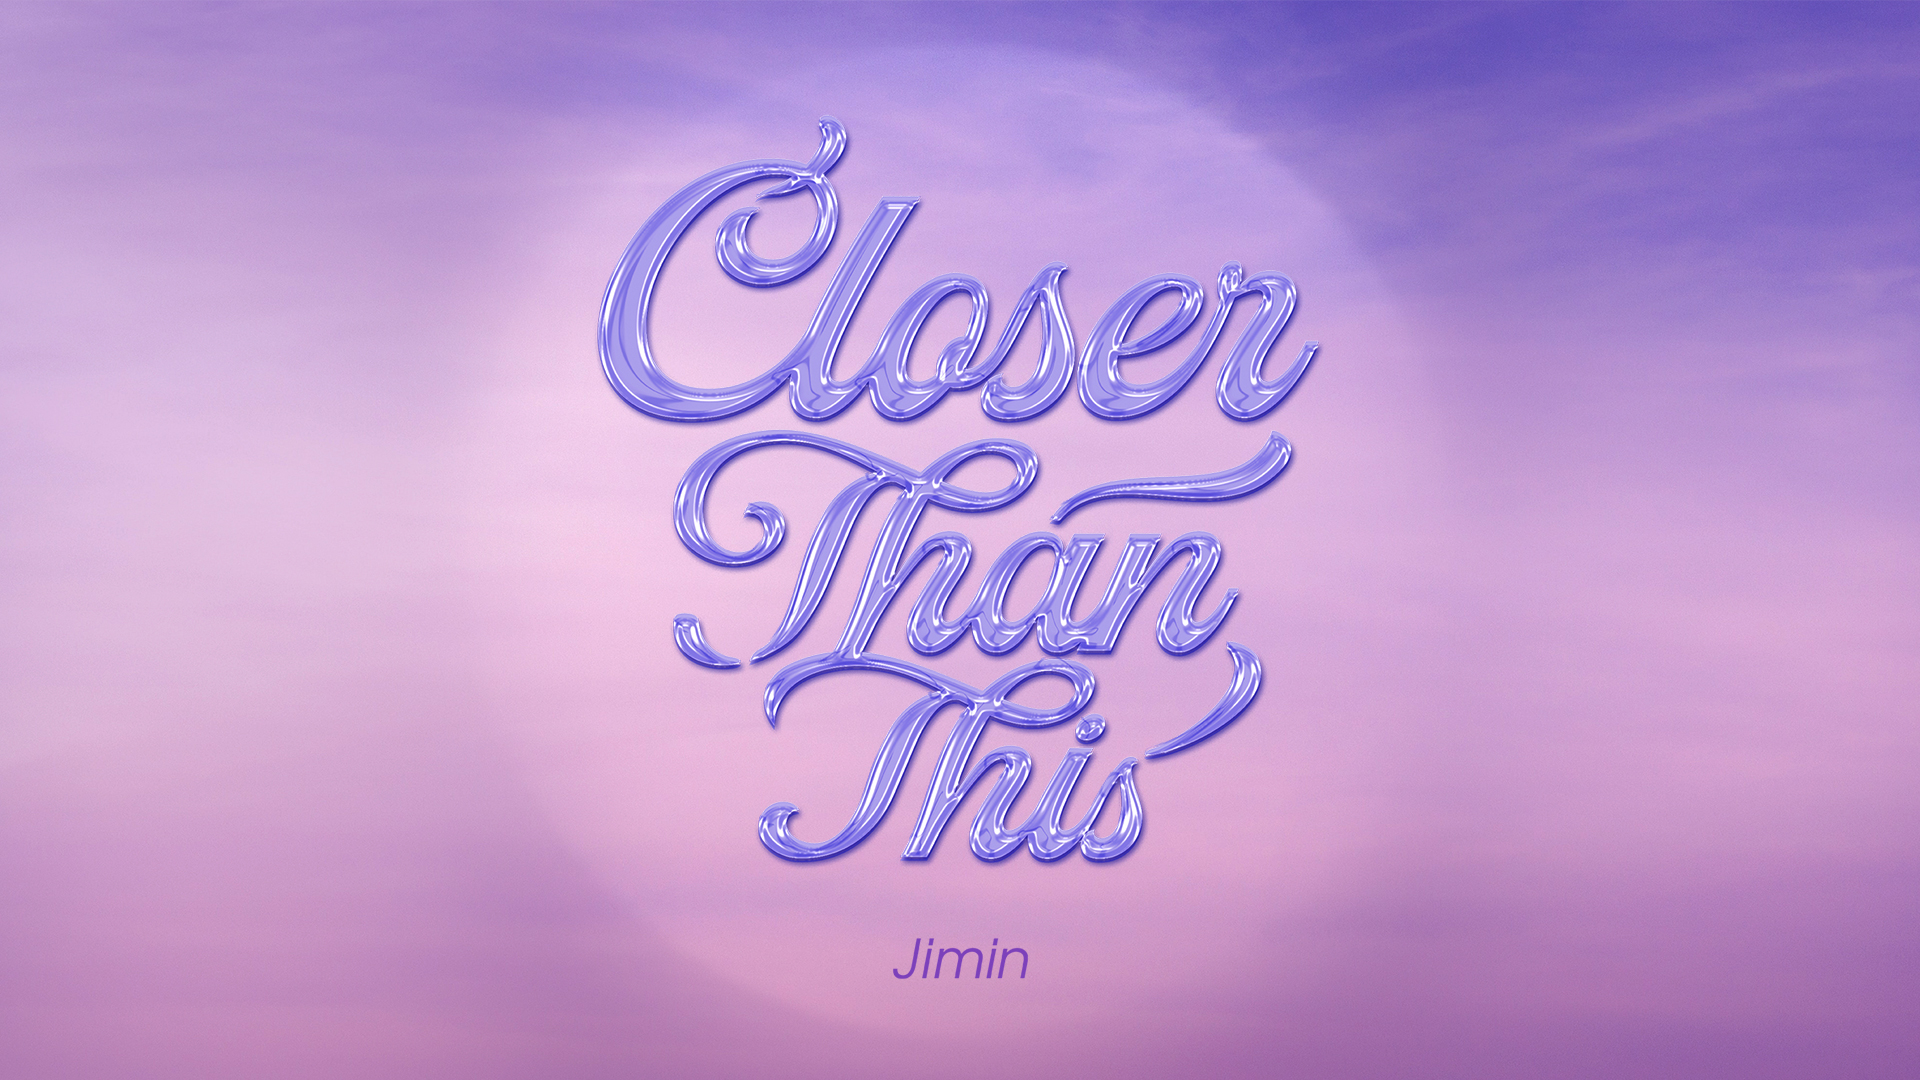 [정보/소식] [공지] 방탄 지민 솔로 디지털 싱글 'Closer Than This' 발매 안내 | 인스티즈